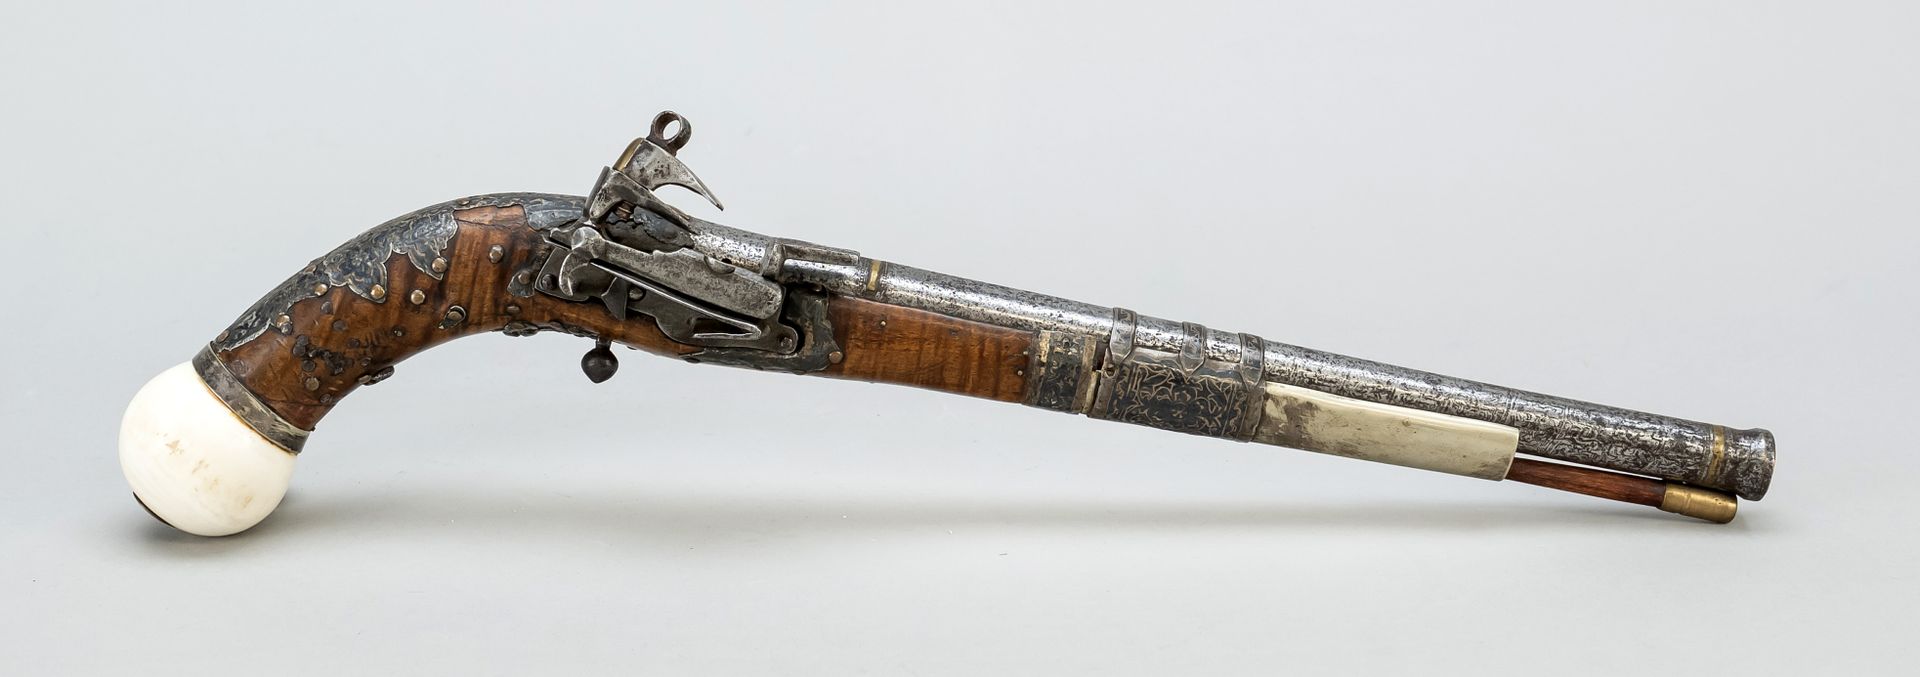 Null 东方燧发枪，18世纪，深色硬木枪托，带有镶嵌的装饰性配件。圆形铁管，鞍座上有骨/象牙球。公鸡和释放，长41厘米。